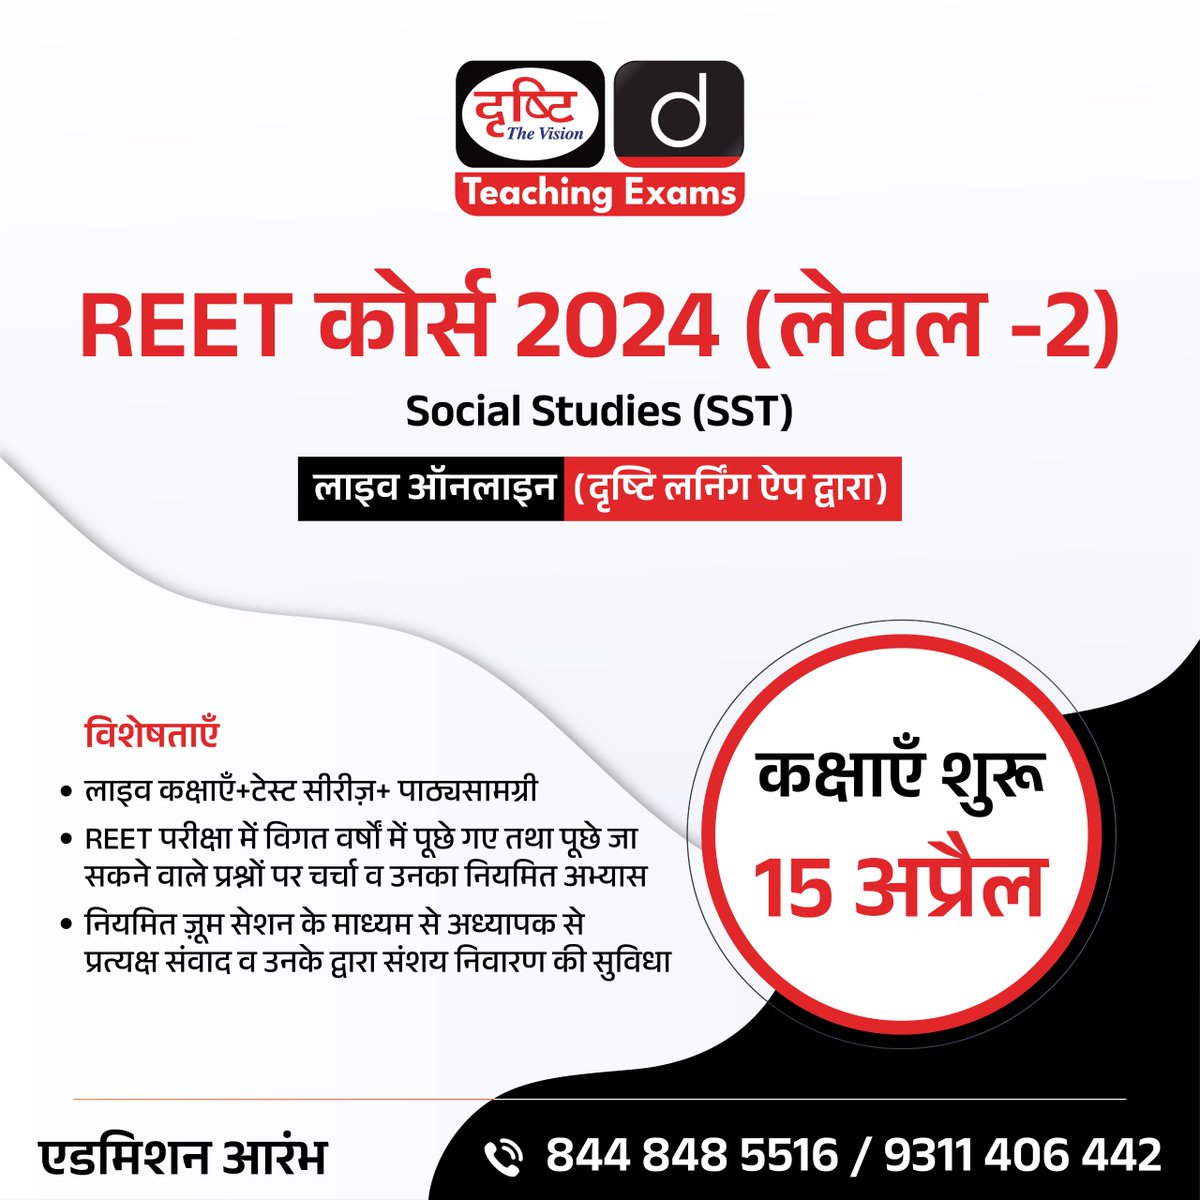 REET कोर्स 2024 (लेवल -2)

Social Studies (SST)

लाइव ऑनलाइन (दृष्टि लर्निंग ऐप द्वारा)

एडमिशन आरंभ

अधिक जानकारी के लिये क्लिक करें इस लिंक पर: drishti.xyz/REET-Level2-SS…

#REET #SocialStudies #SST #Level2 #DrishtiTeachingExams